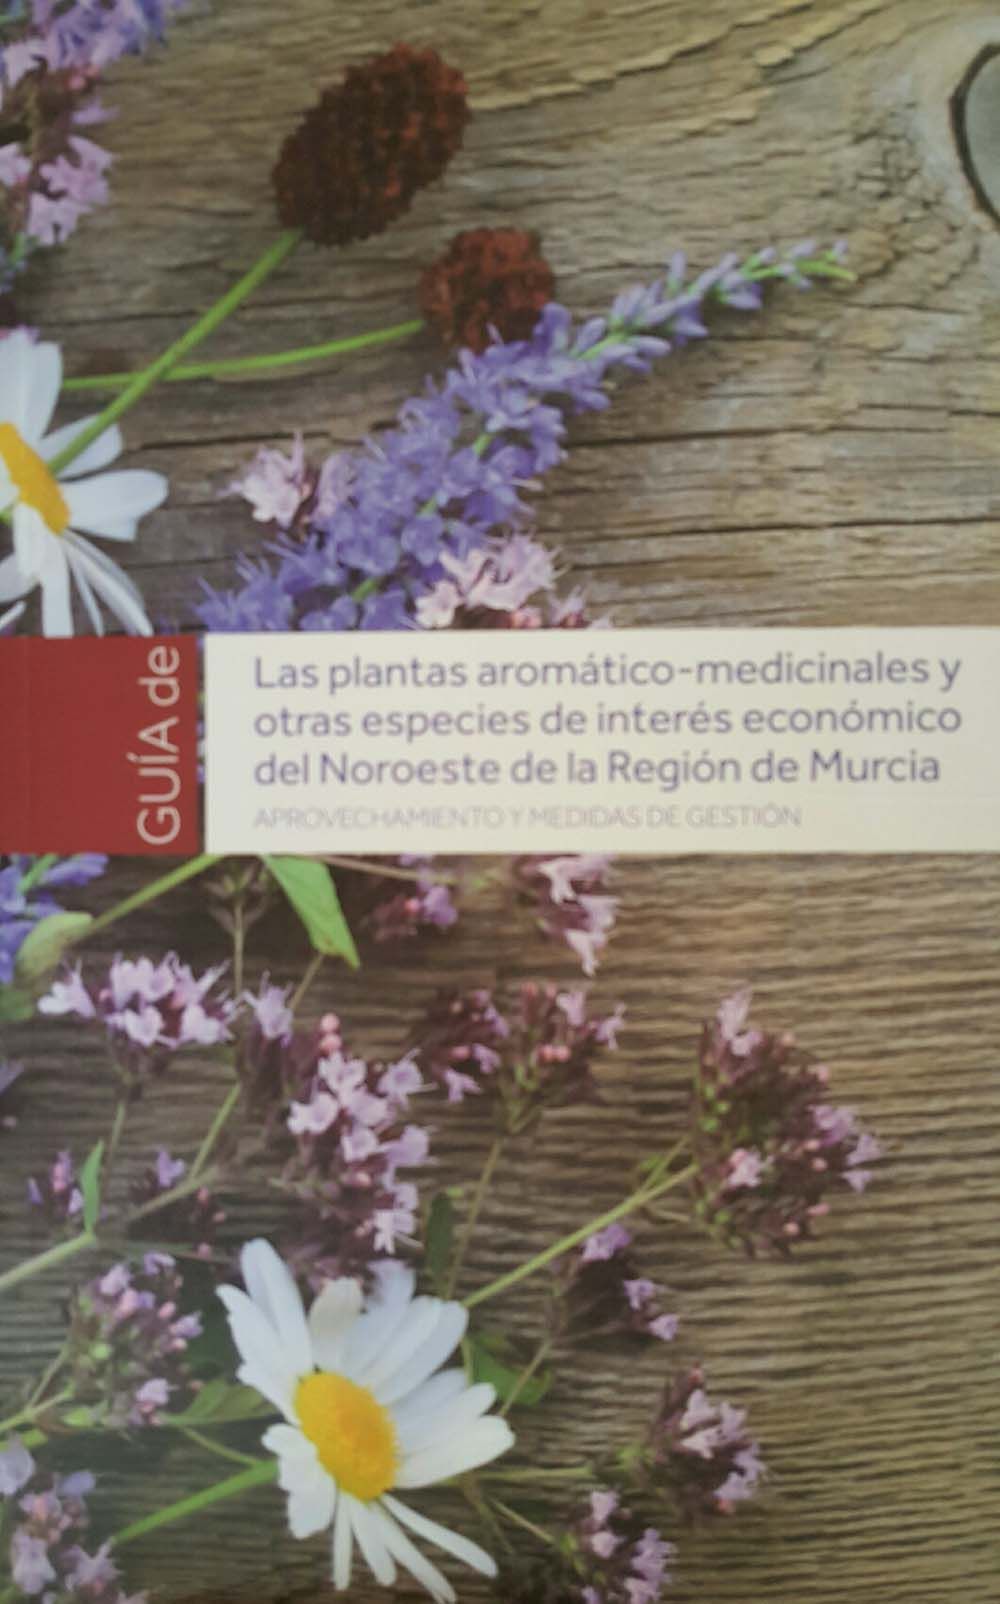 Agricultura edita una guía sobre plantas aromáticas-medicinales del noroeste regional